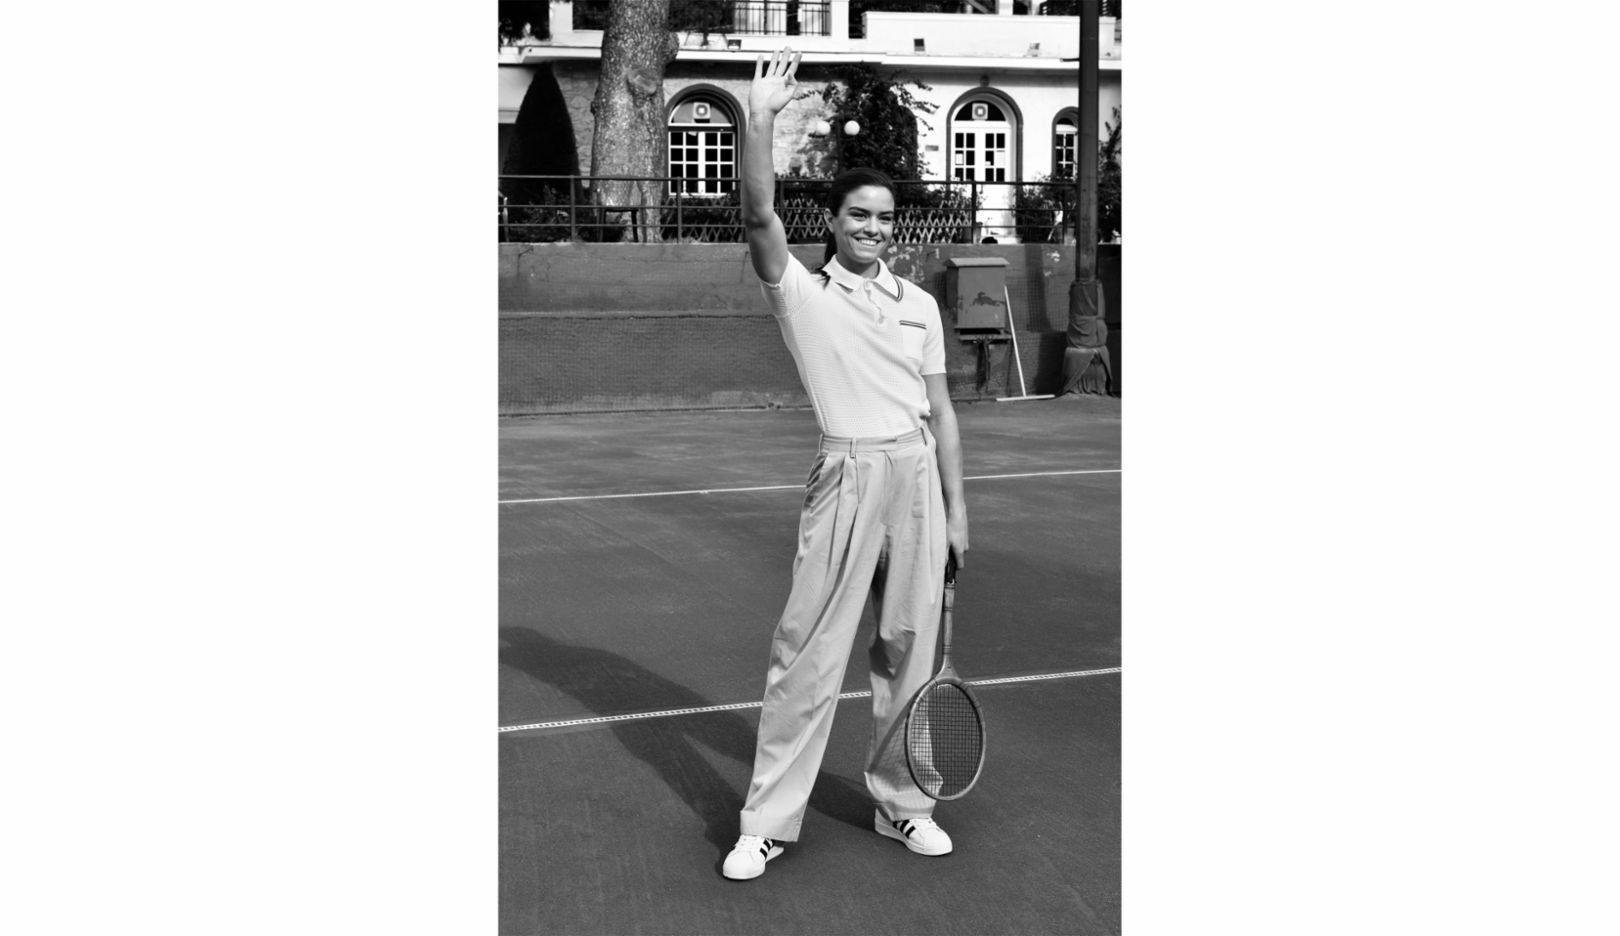 雅典草地網球俱樂部的瑪麗亞‧莎卡瑞 (Maria Sakkari)。「這張照片是在致敬 1930 年代與 1940 年代。」萊特梅里茨解釋，「瑪麗亞在雅典長大。就連她的祖父母輩和她的母親，都在這個老網球俱樂部打過球。這就是為什麼我想透過這種環境以及這個造型來呈現的原因。」 